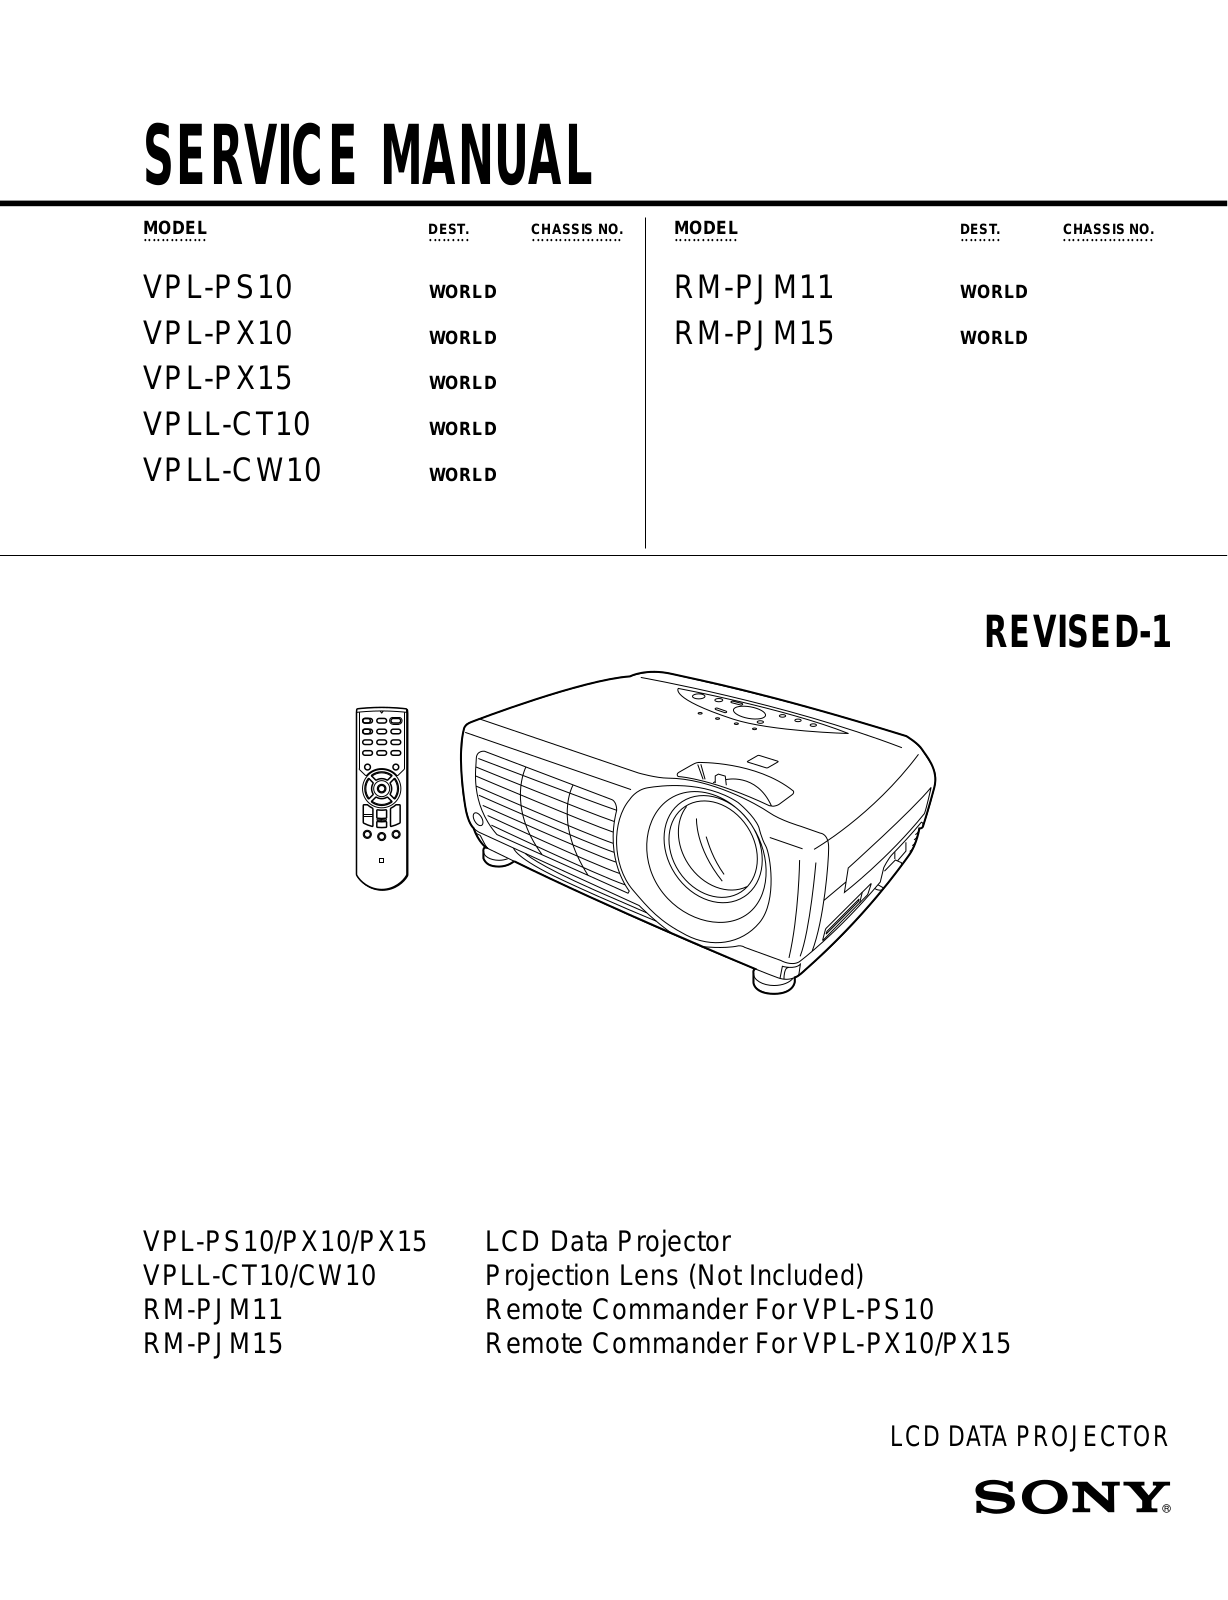 Sony RM-PJM15, RM-PJM11, VPLL-CW10, VPLL-CT10, VPL-PX15 Service Manual